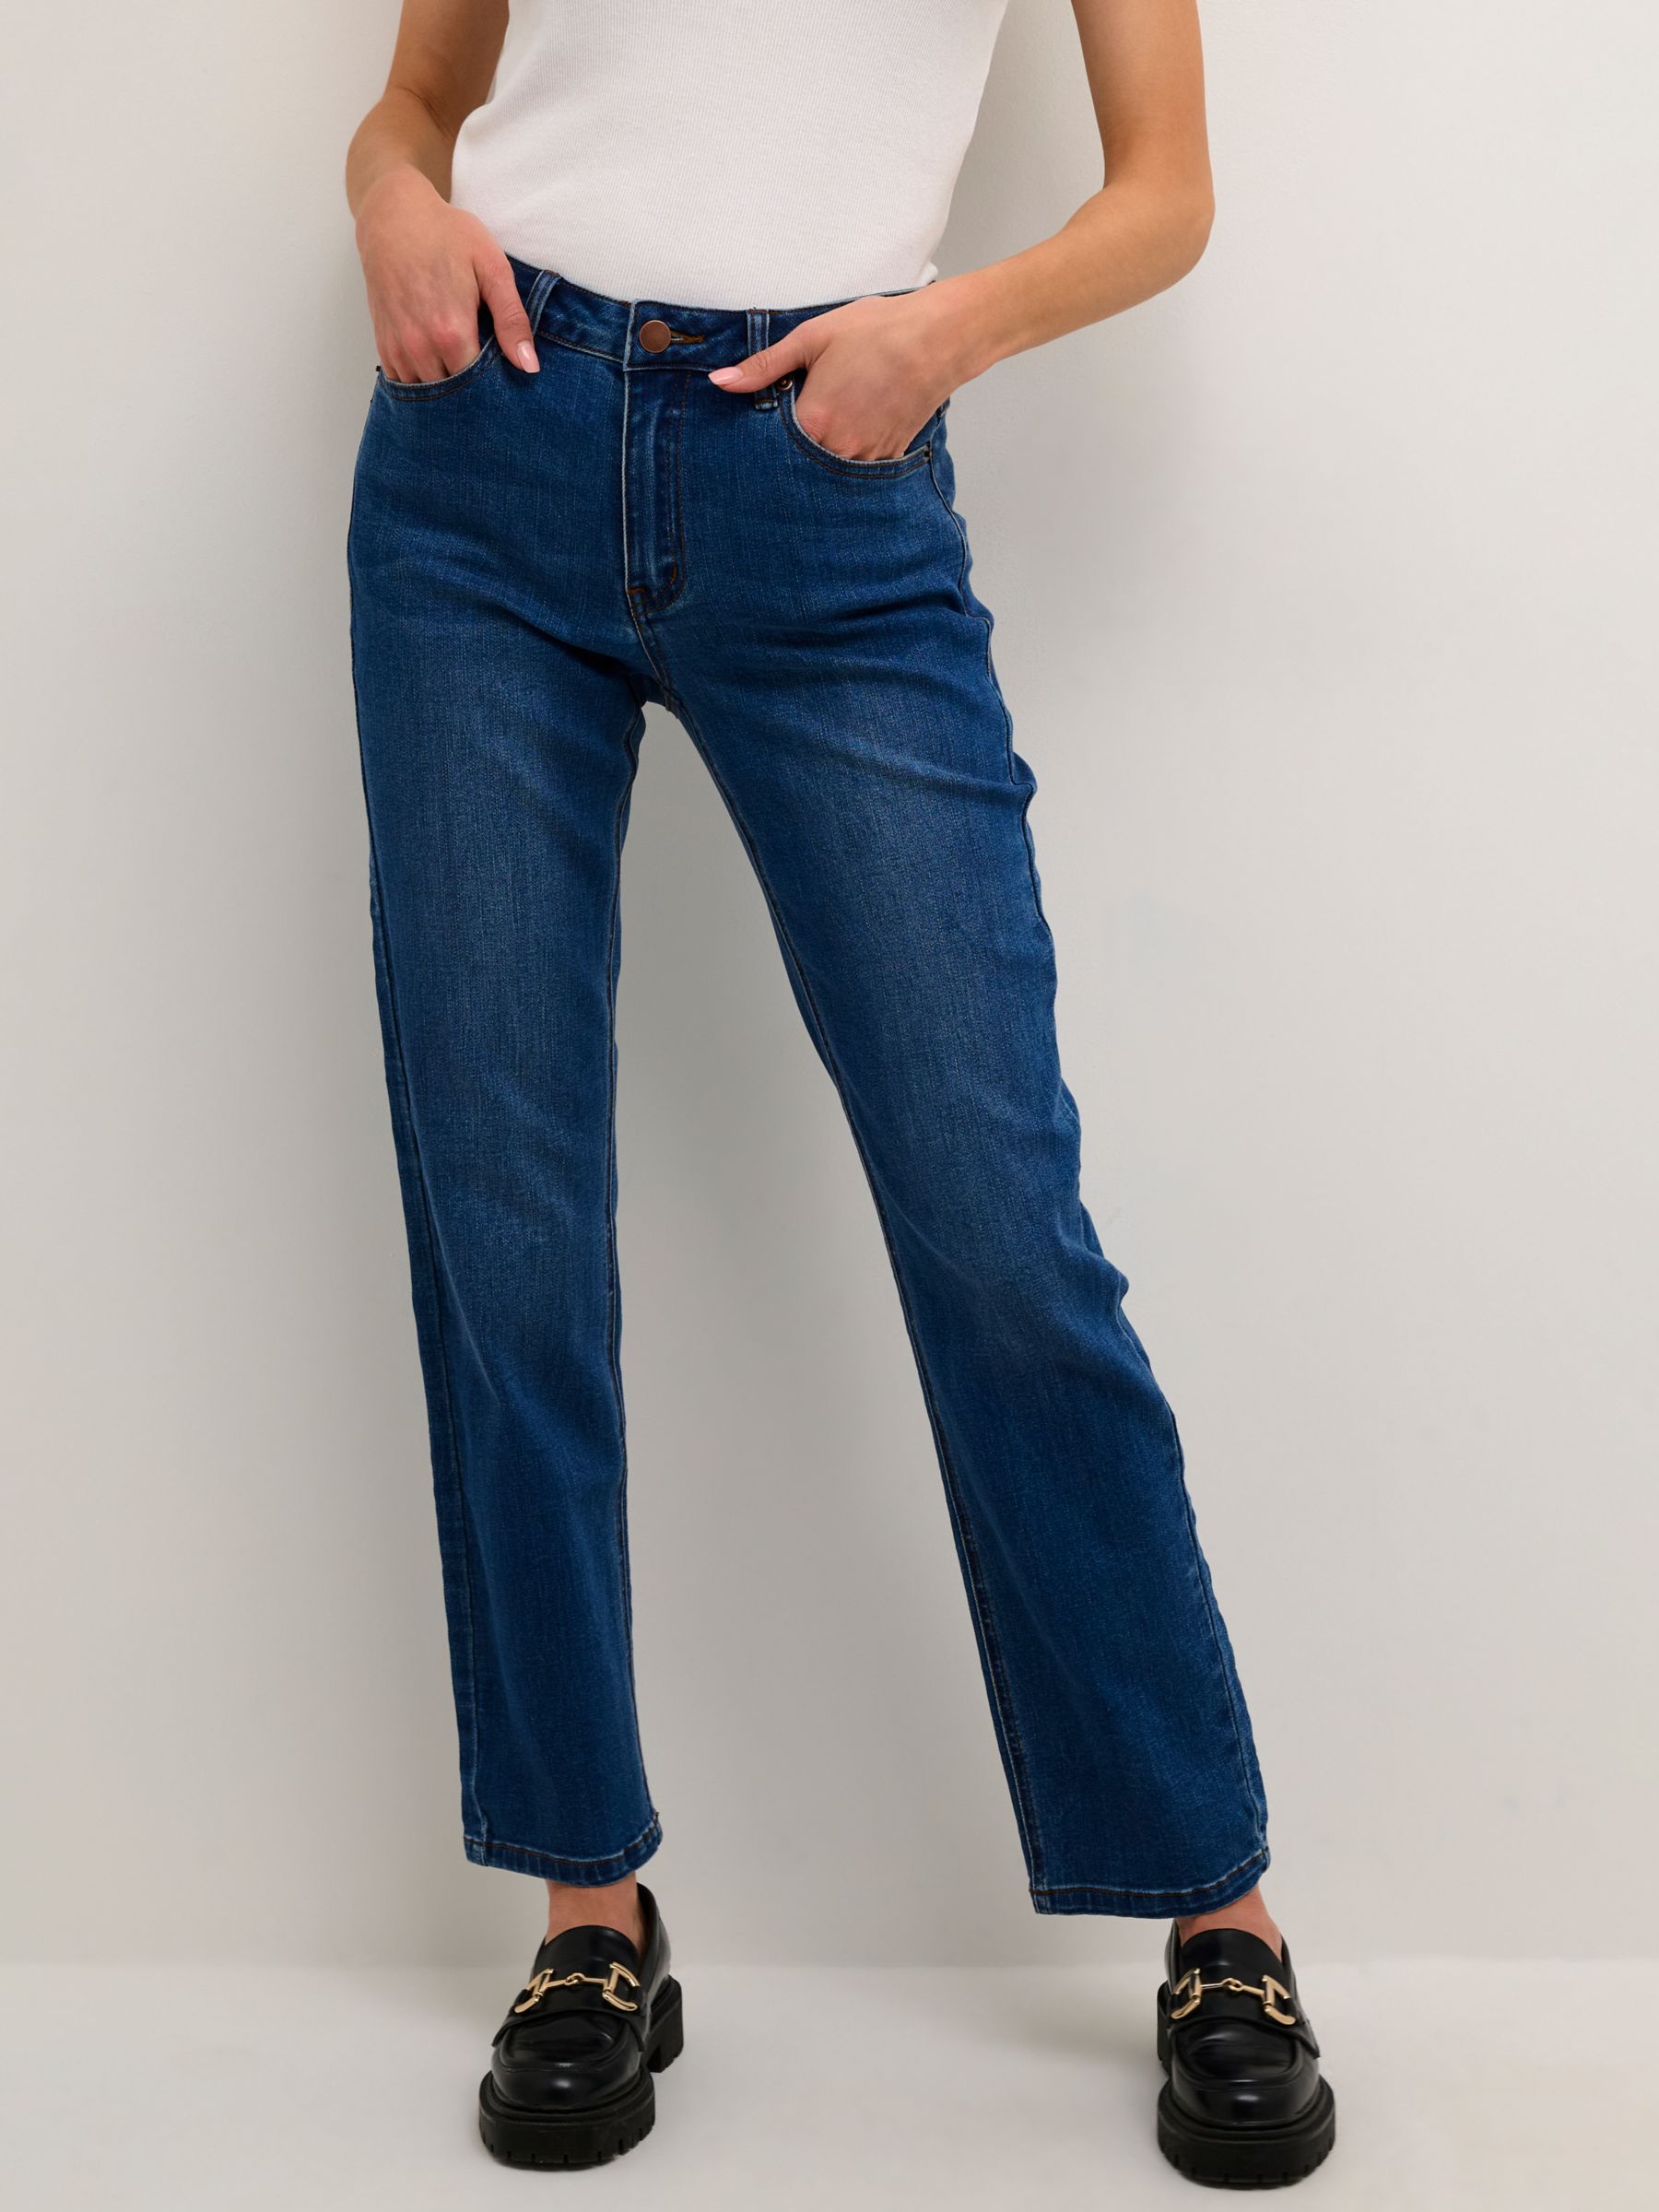 KAFFE - Women's Jeans  John Lewis & Partners